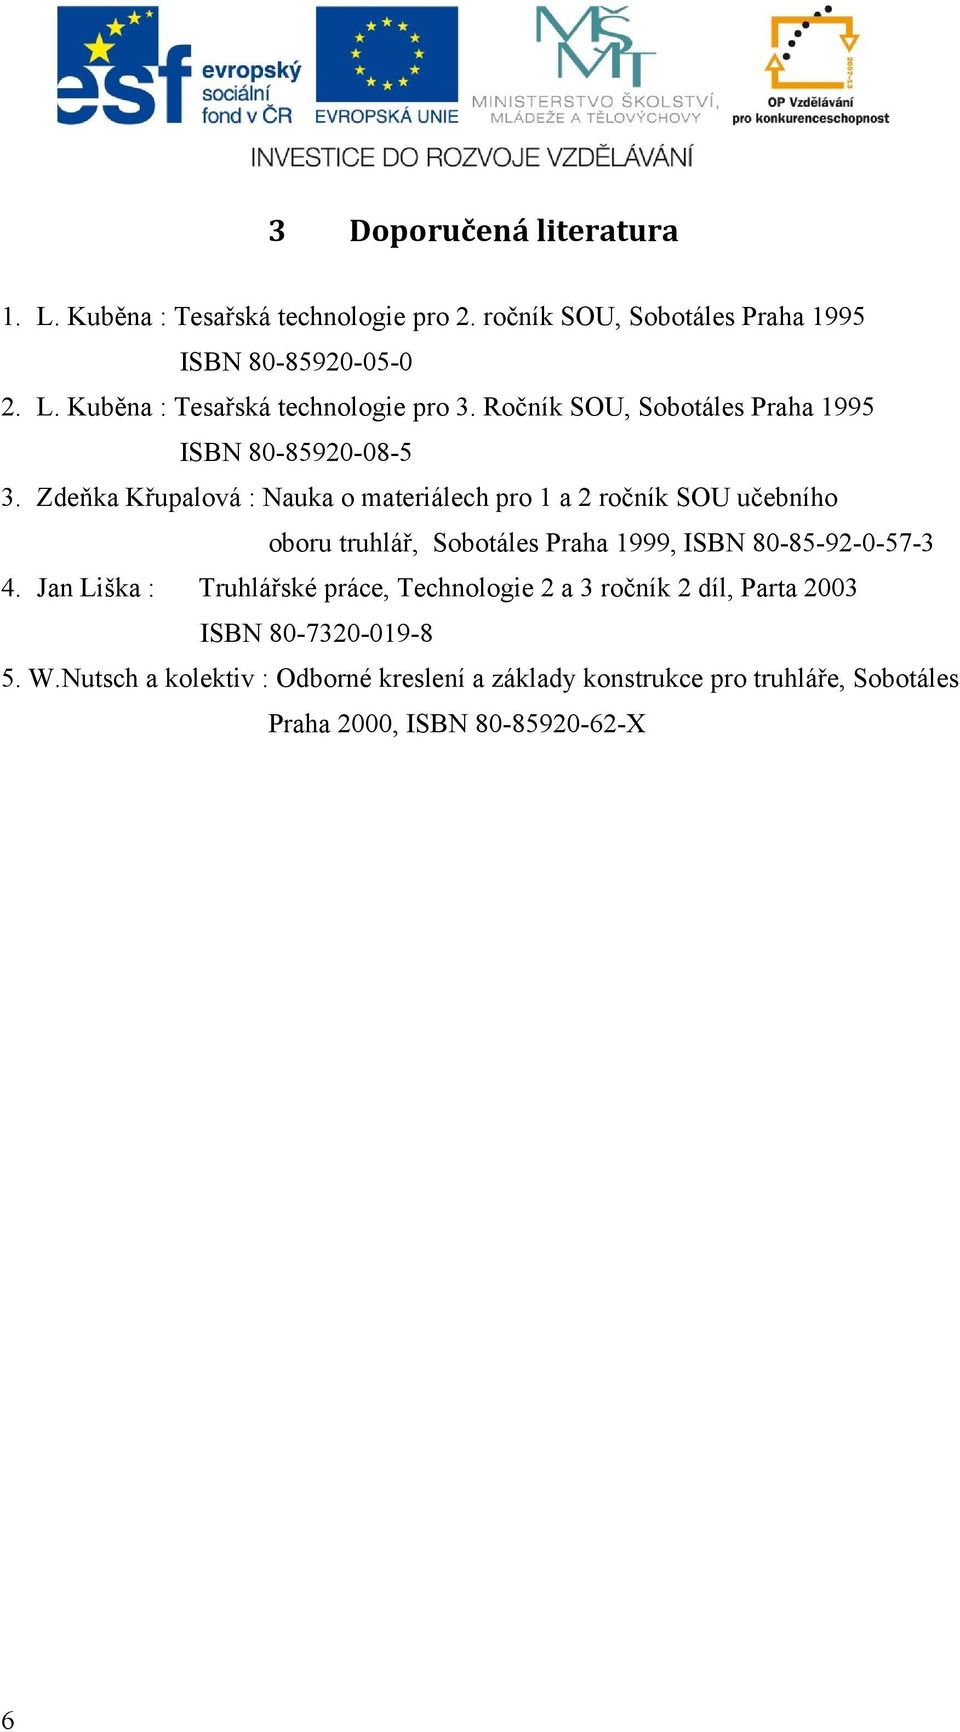 Zdeňka Křupalová : Nauka o materiálech pro 1 a 2 ročník SOU učebního oboru truhlář, Sobotáles Praha 1999, ISBN 80-85-92-0-57-3 4.